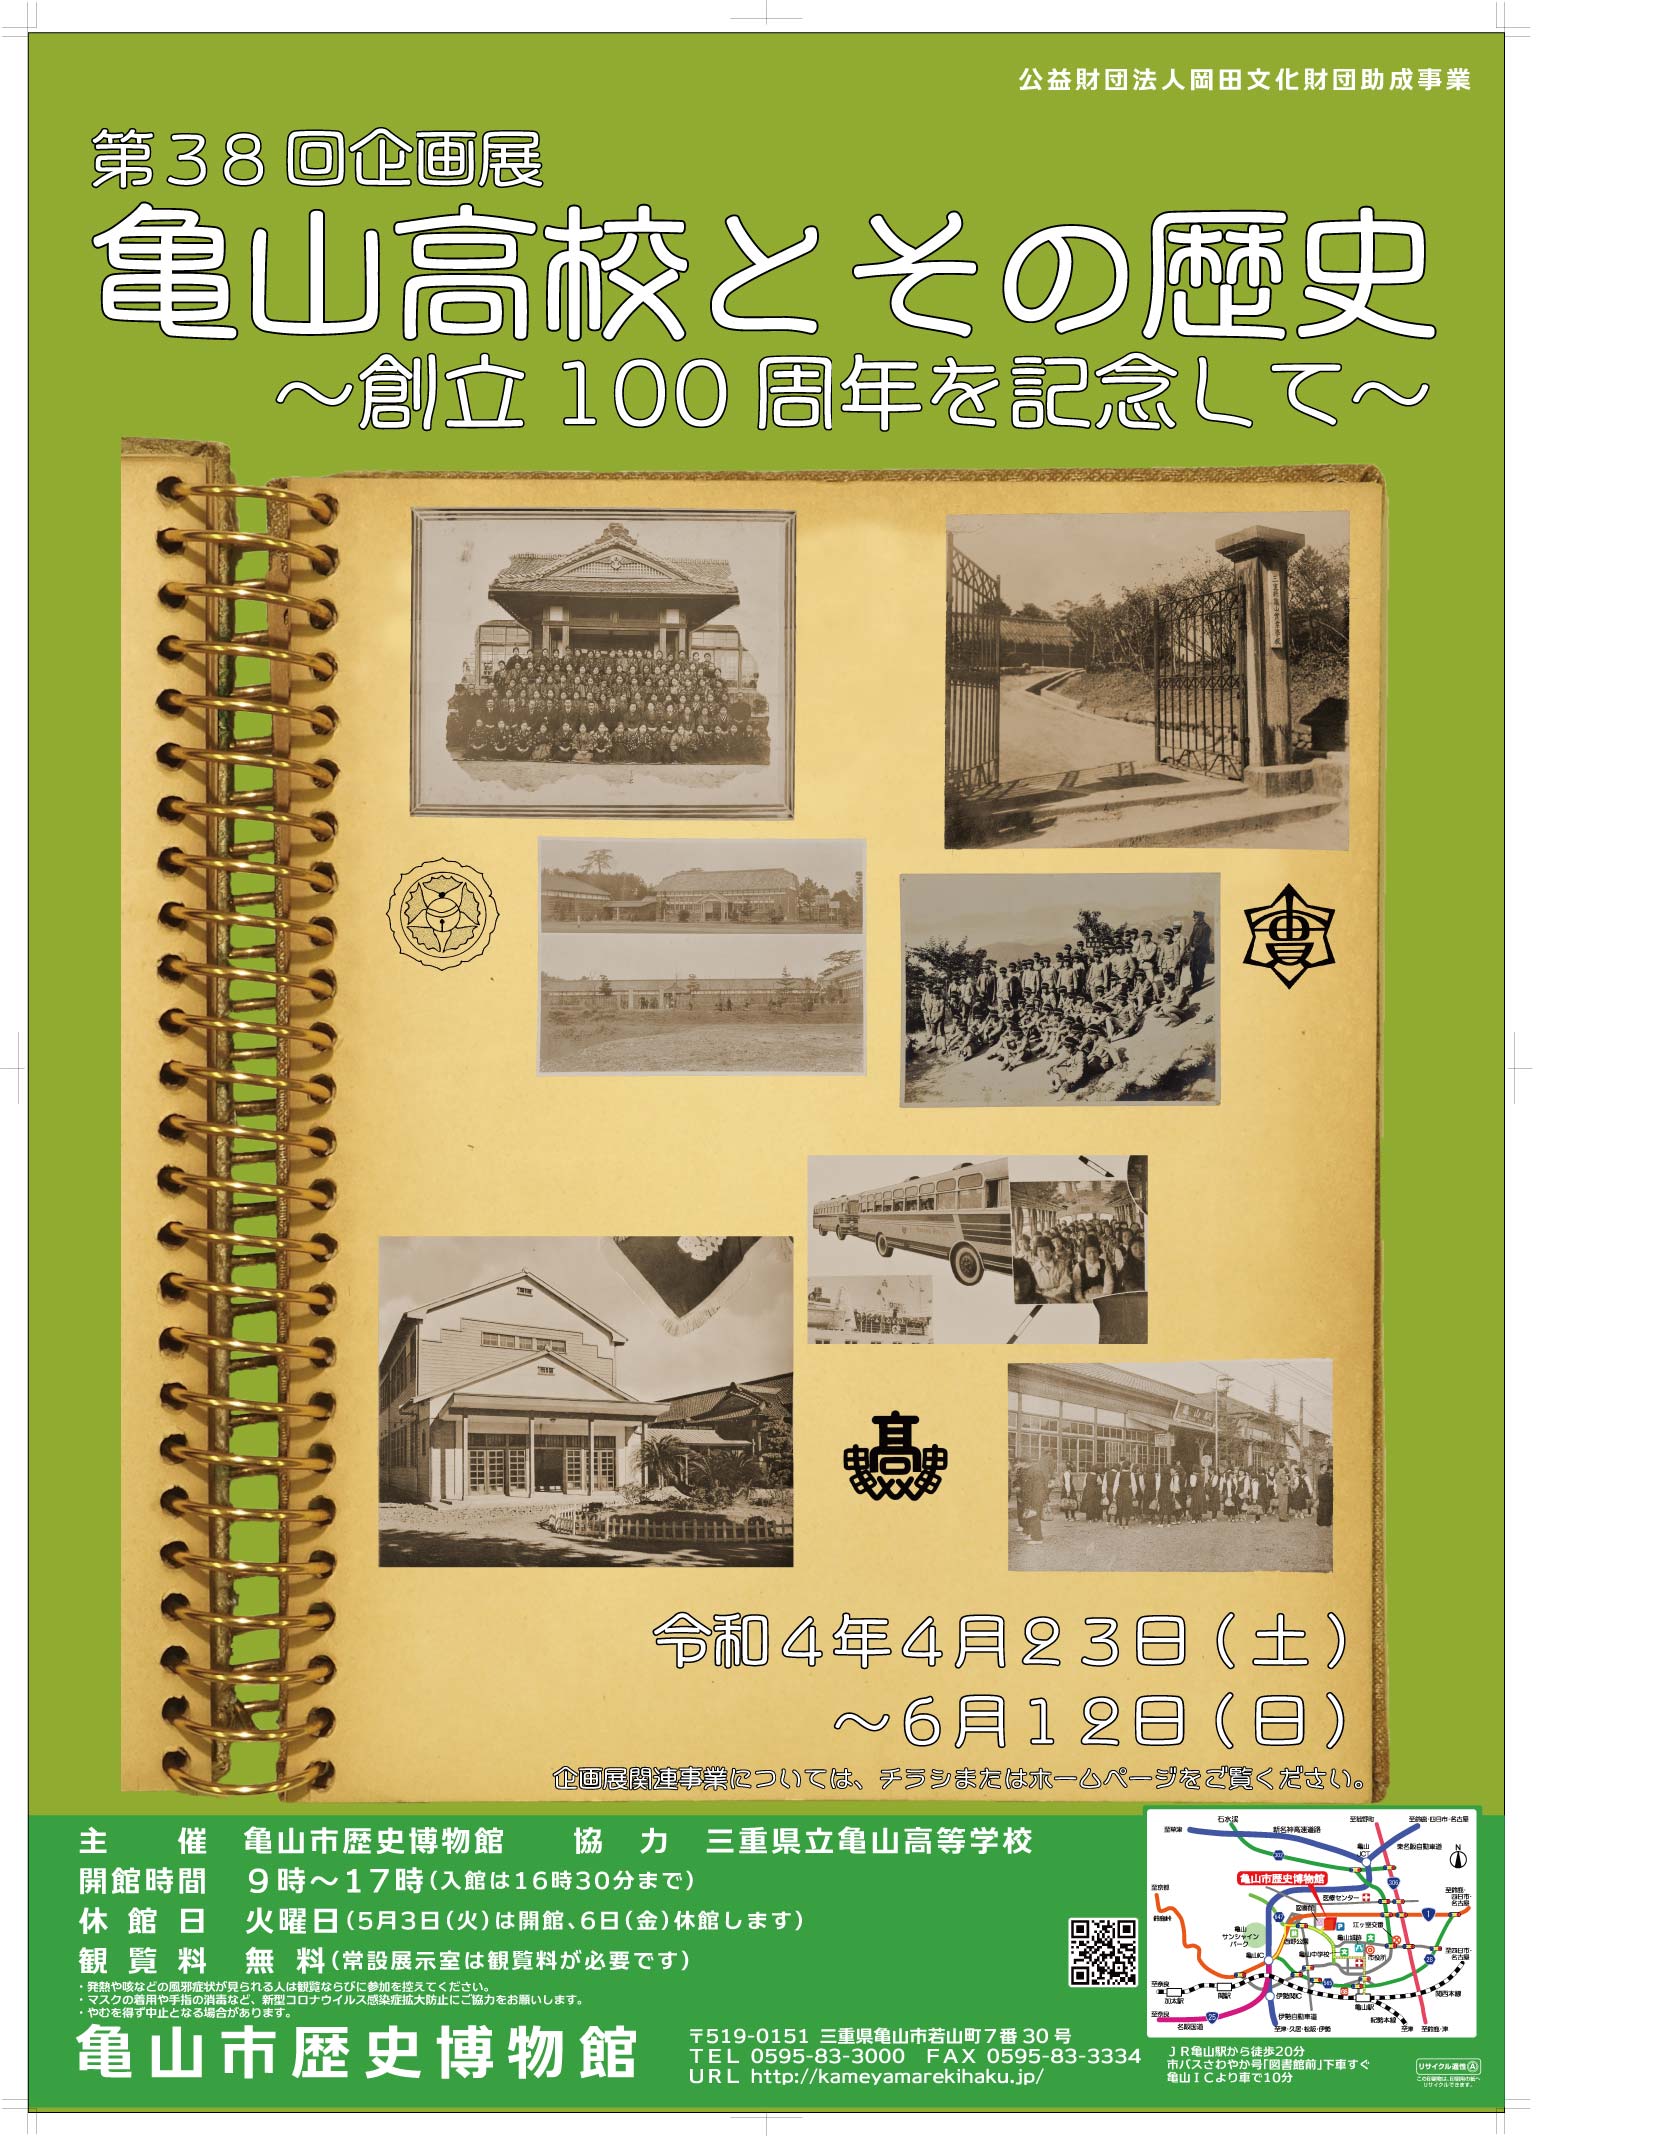 第38回企画展「亀山高校とその歴史−創立100周年を記念して−」